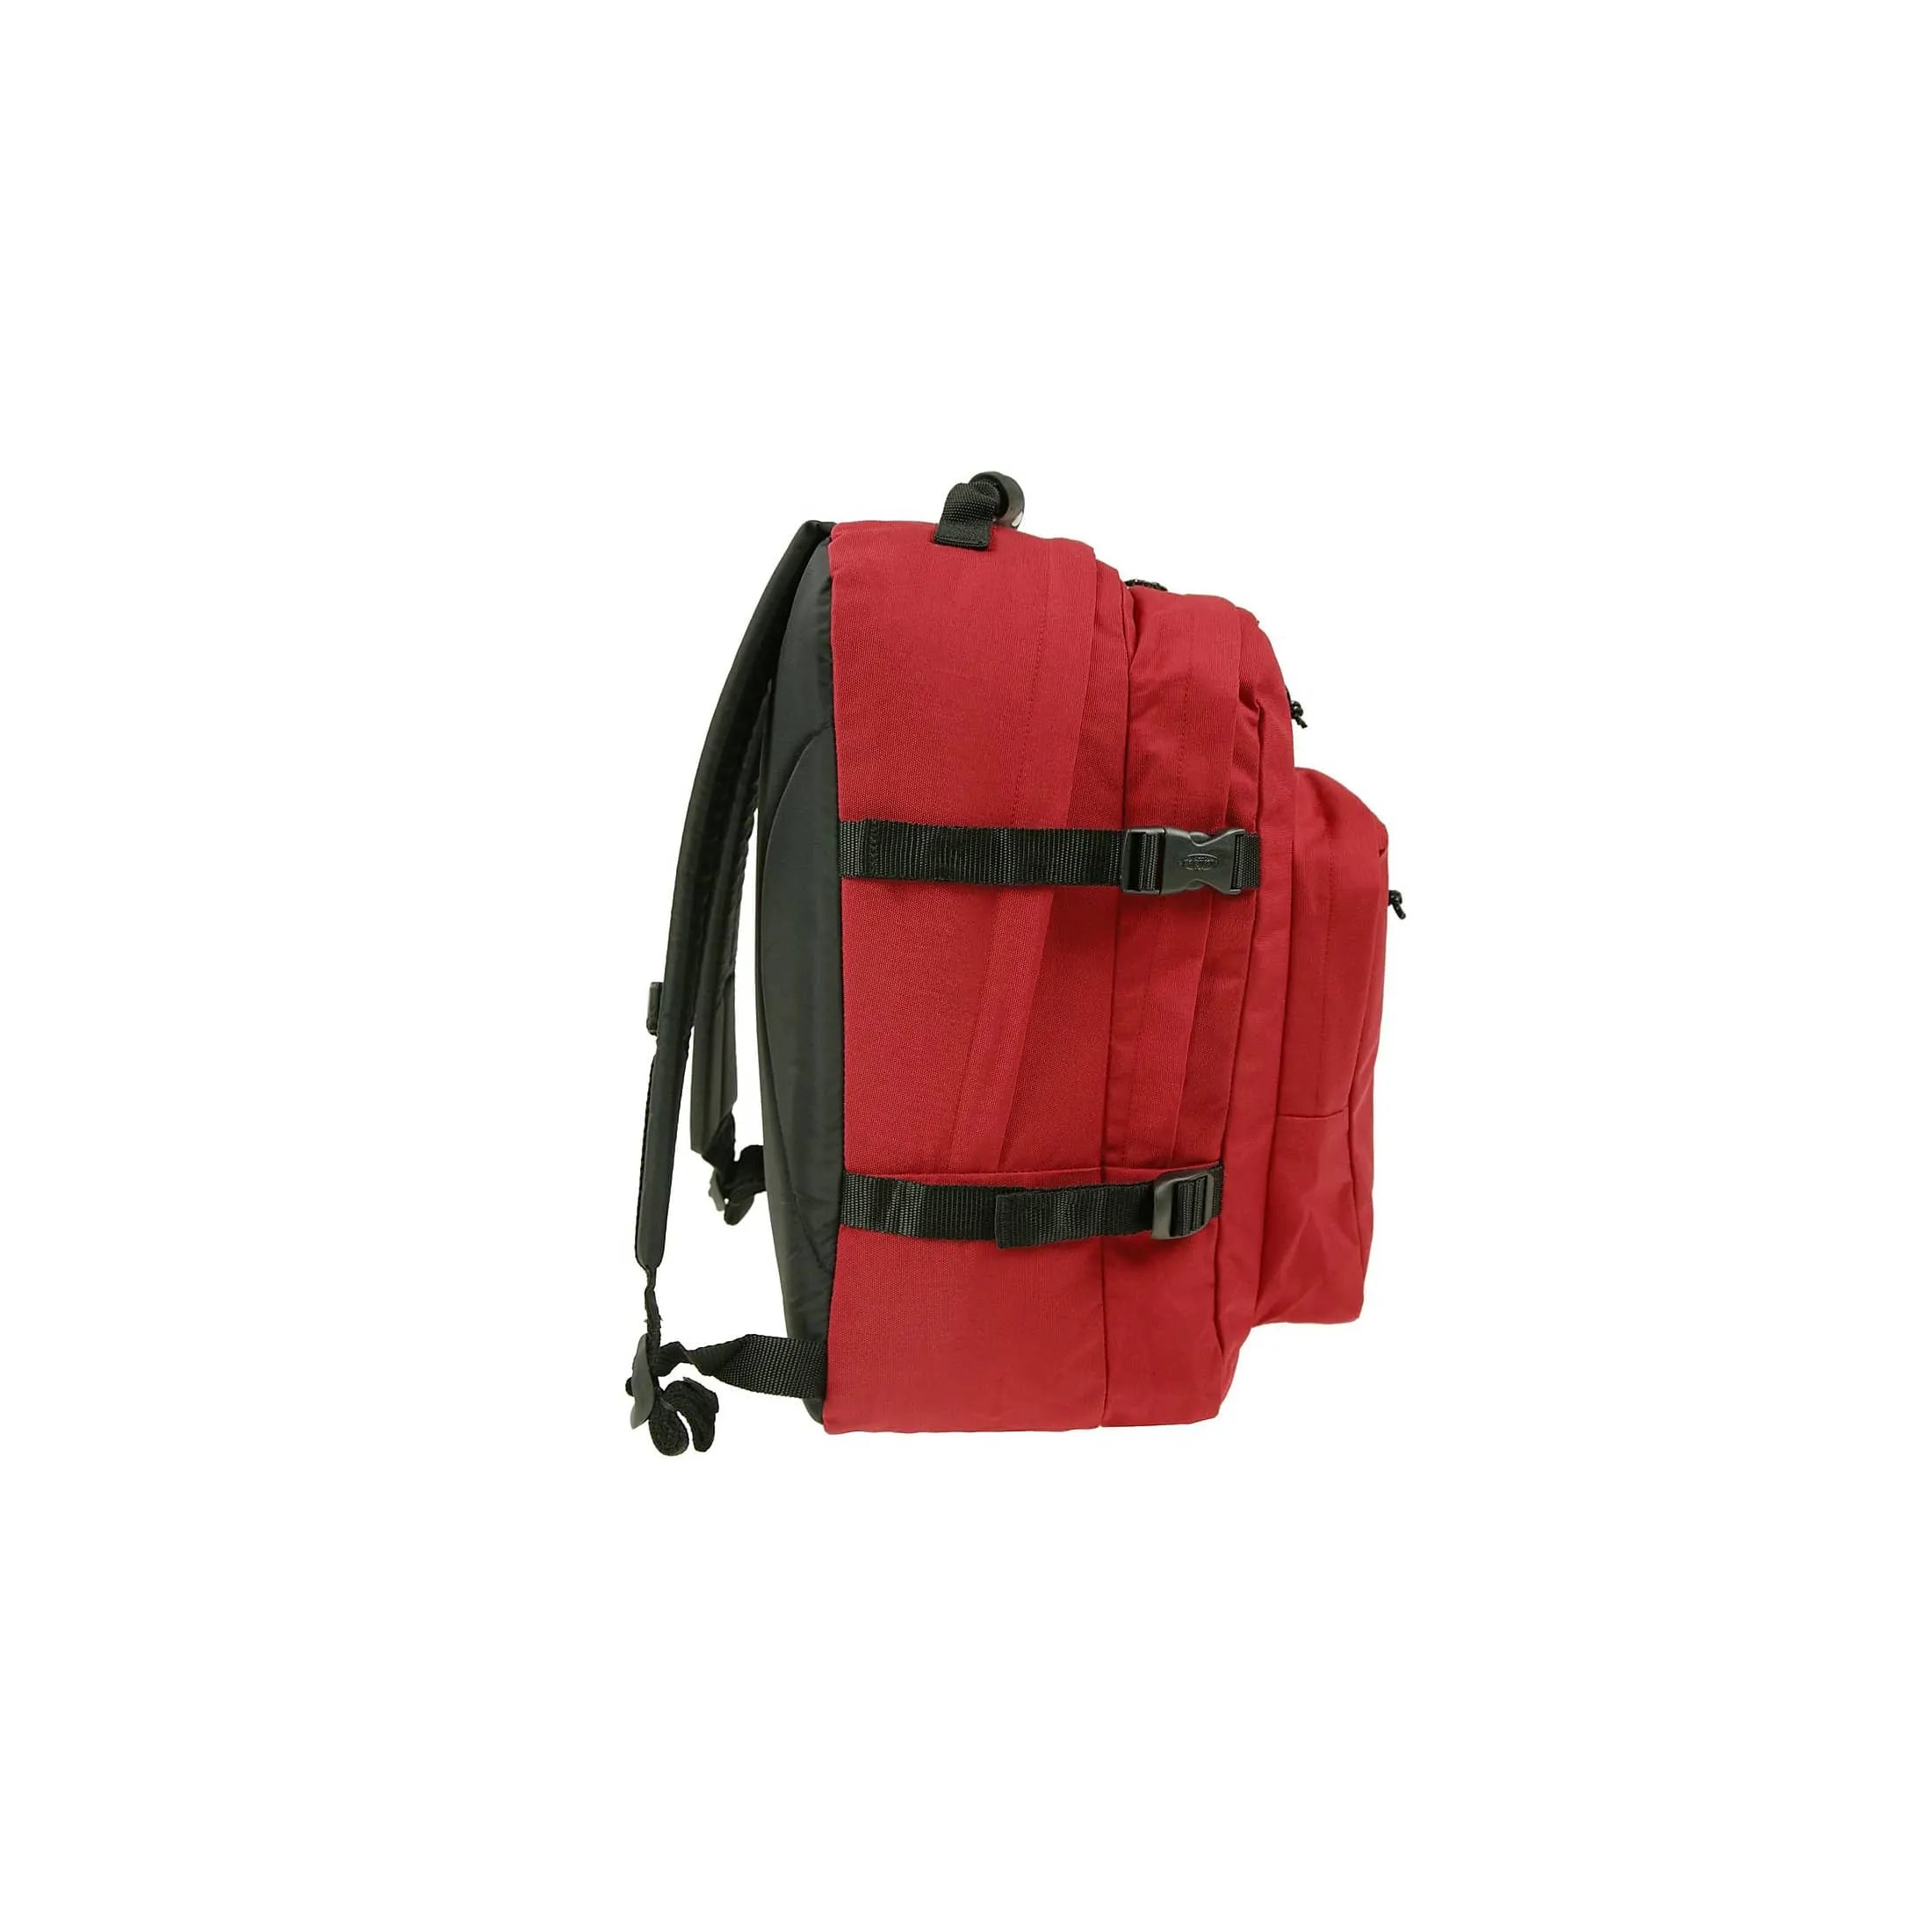 Eastpak Authentic Provider sac à dos pour ordinateur portable 44 cm - denim noir